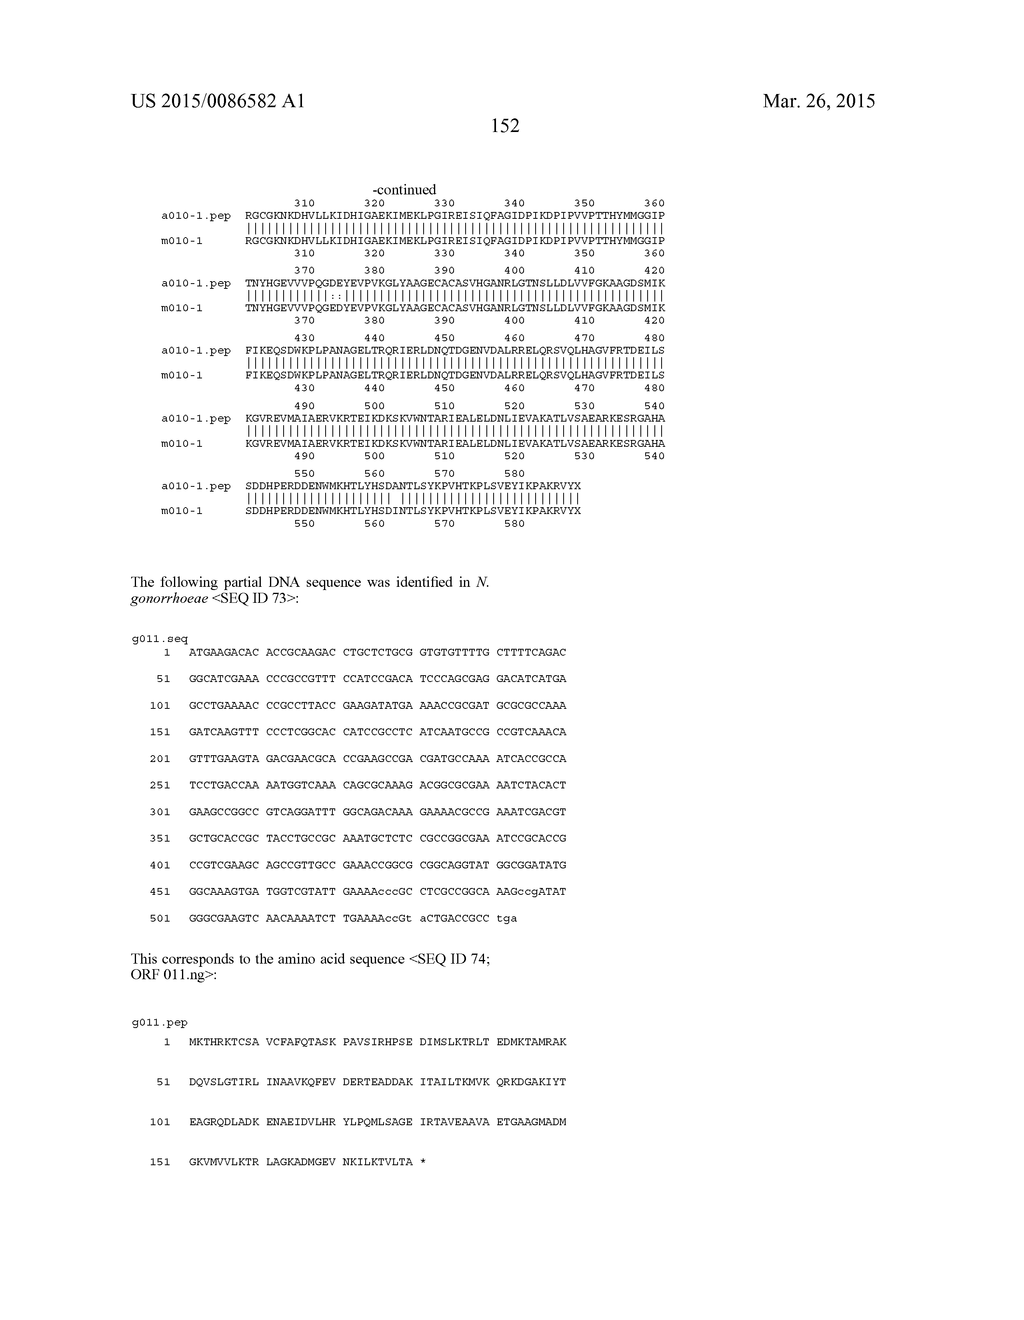 NEISSERIA MENINGITIDIS ANTIGENS AND COMPOSITIONS - diagram, schematic, and image 184